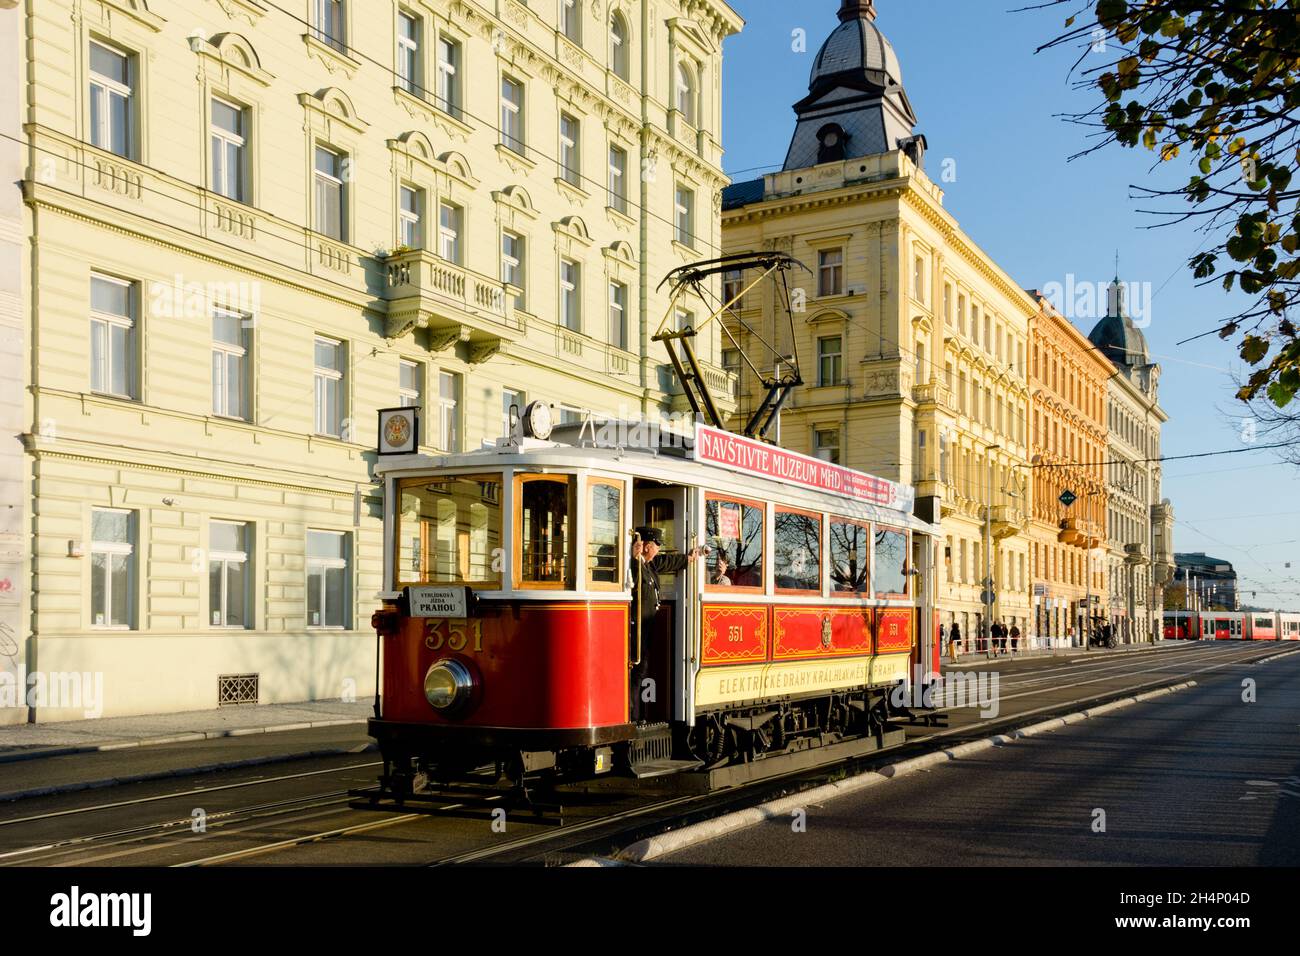 Historische Straßenbahn Prager Straßenbahn Tschechische Republik Tramleiter steht in der offenen Tür Stockfoto